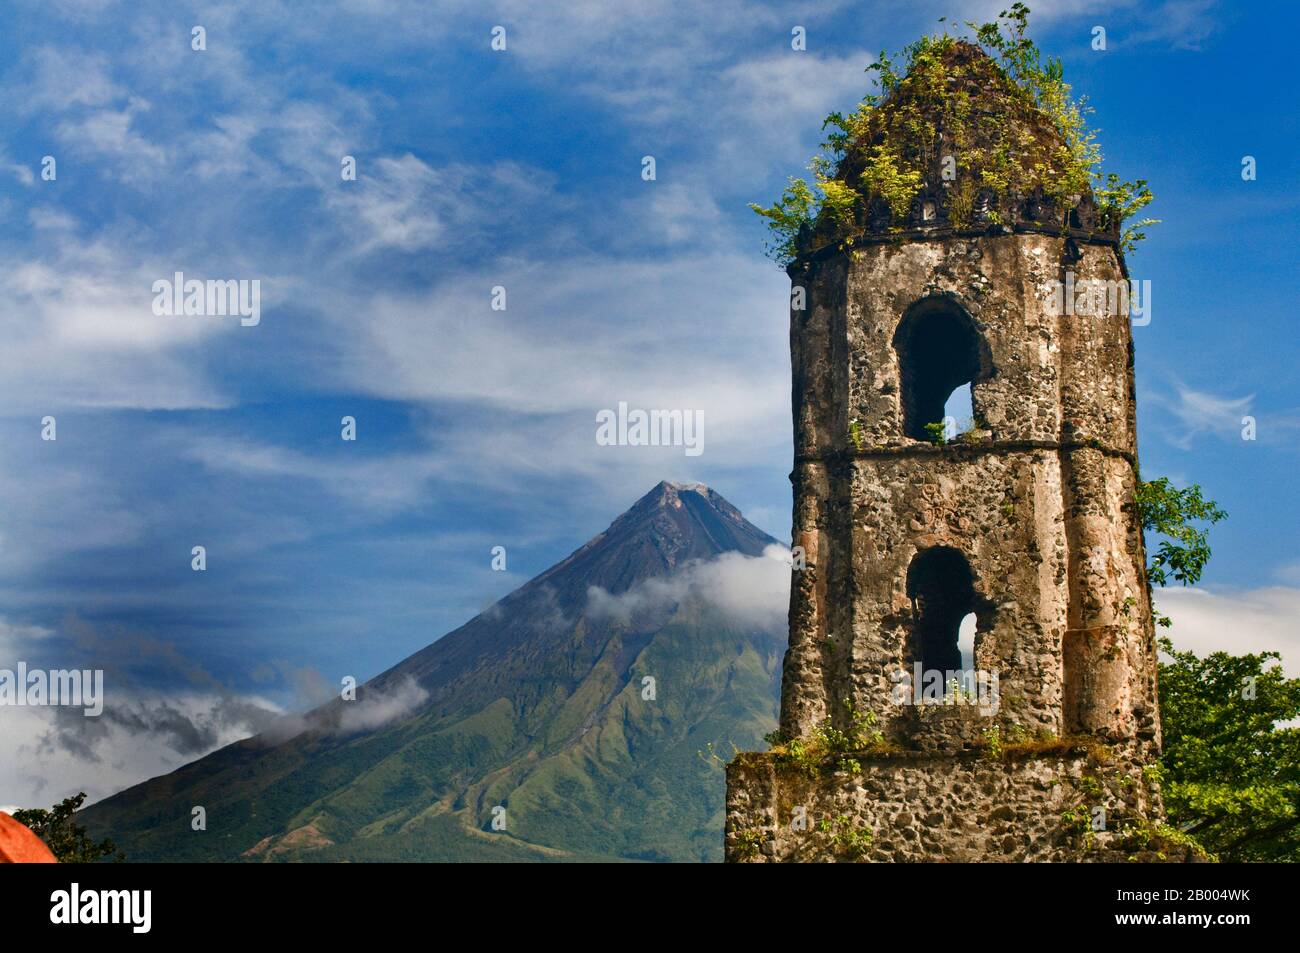 Il Vulcano Mayon, rinomato per il suo cono perfetto, è una popolare destinazione turistica. Le rovine di Cagsawa sono resti di una chiesa francescana del 16th secolo. Foto Stock